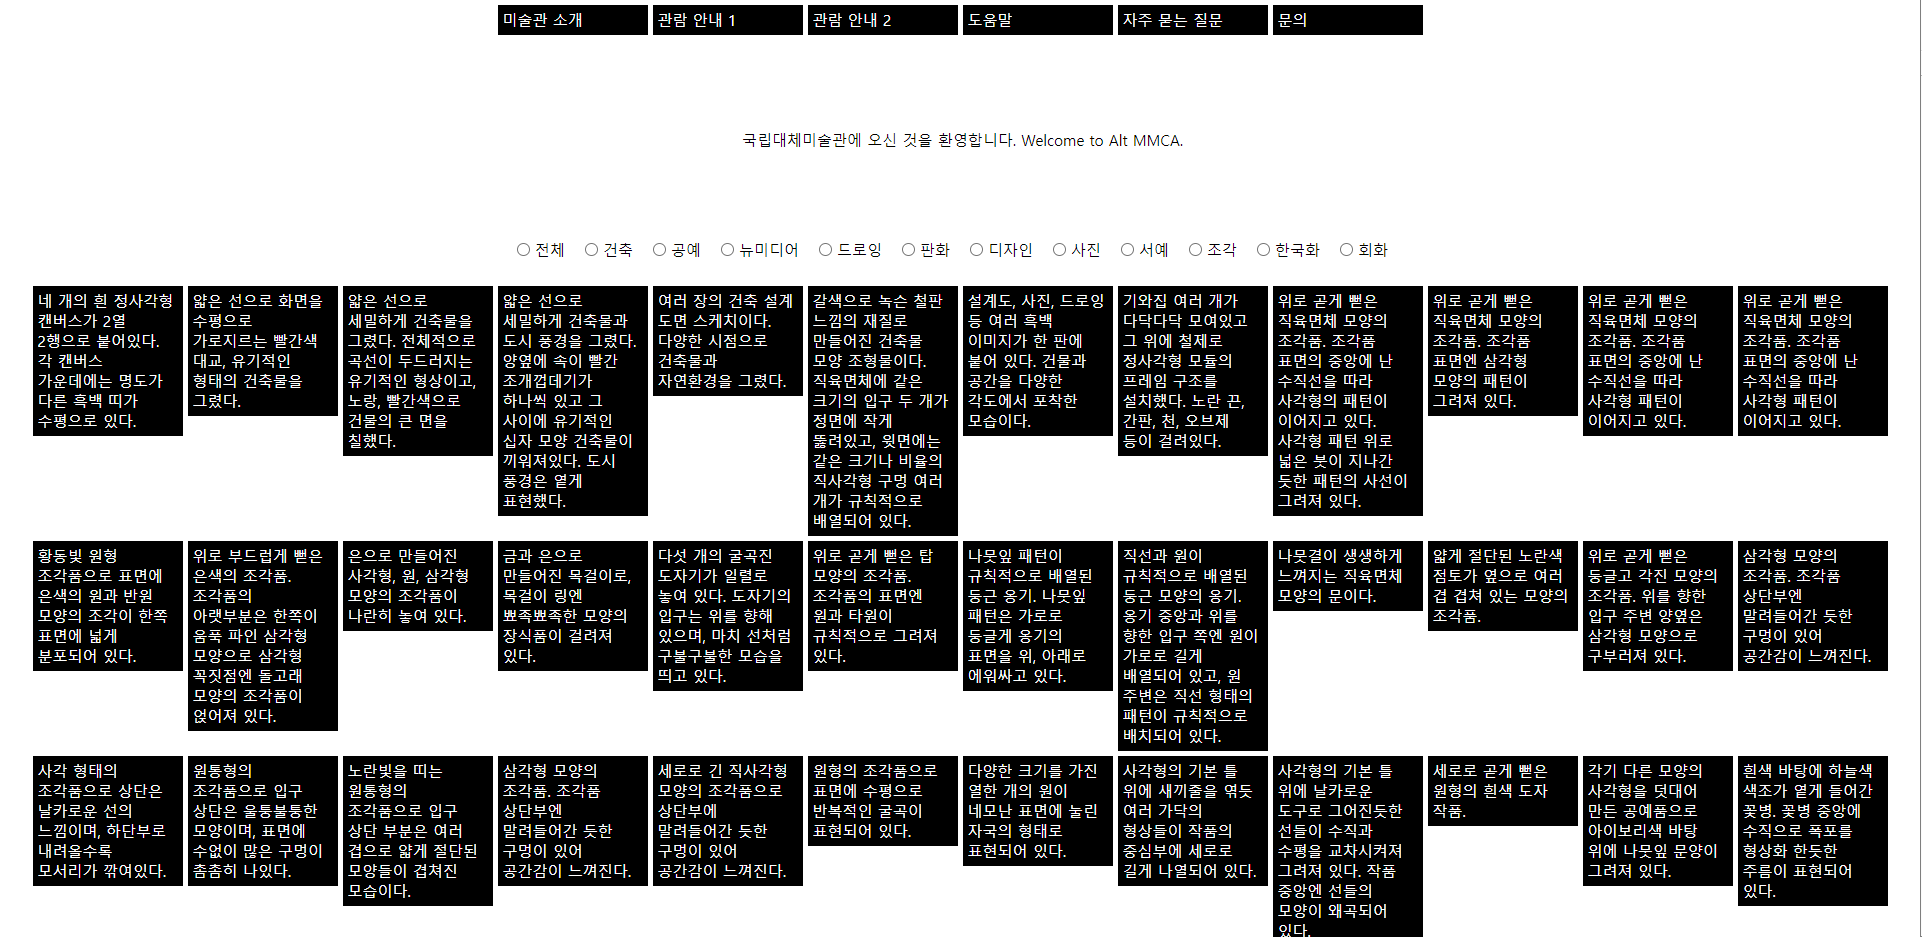 국립대체미술관 사이트 캡쳐 모습. 하얀 배경의 사이트에 검은색 바탕의 사각형 텍스트 블록이 나열되어 있다.